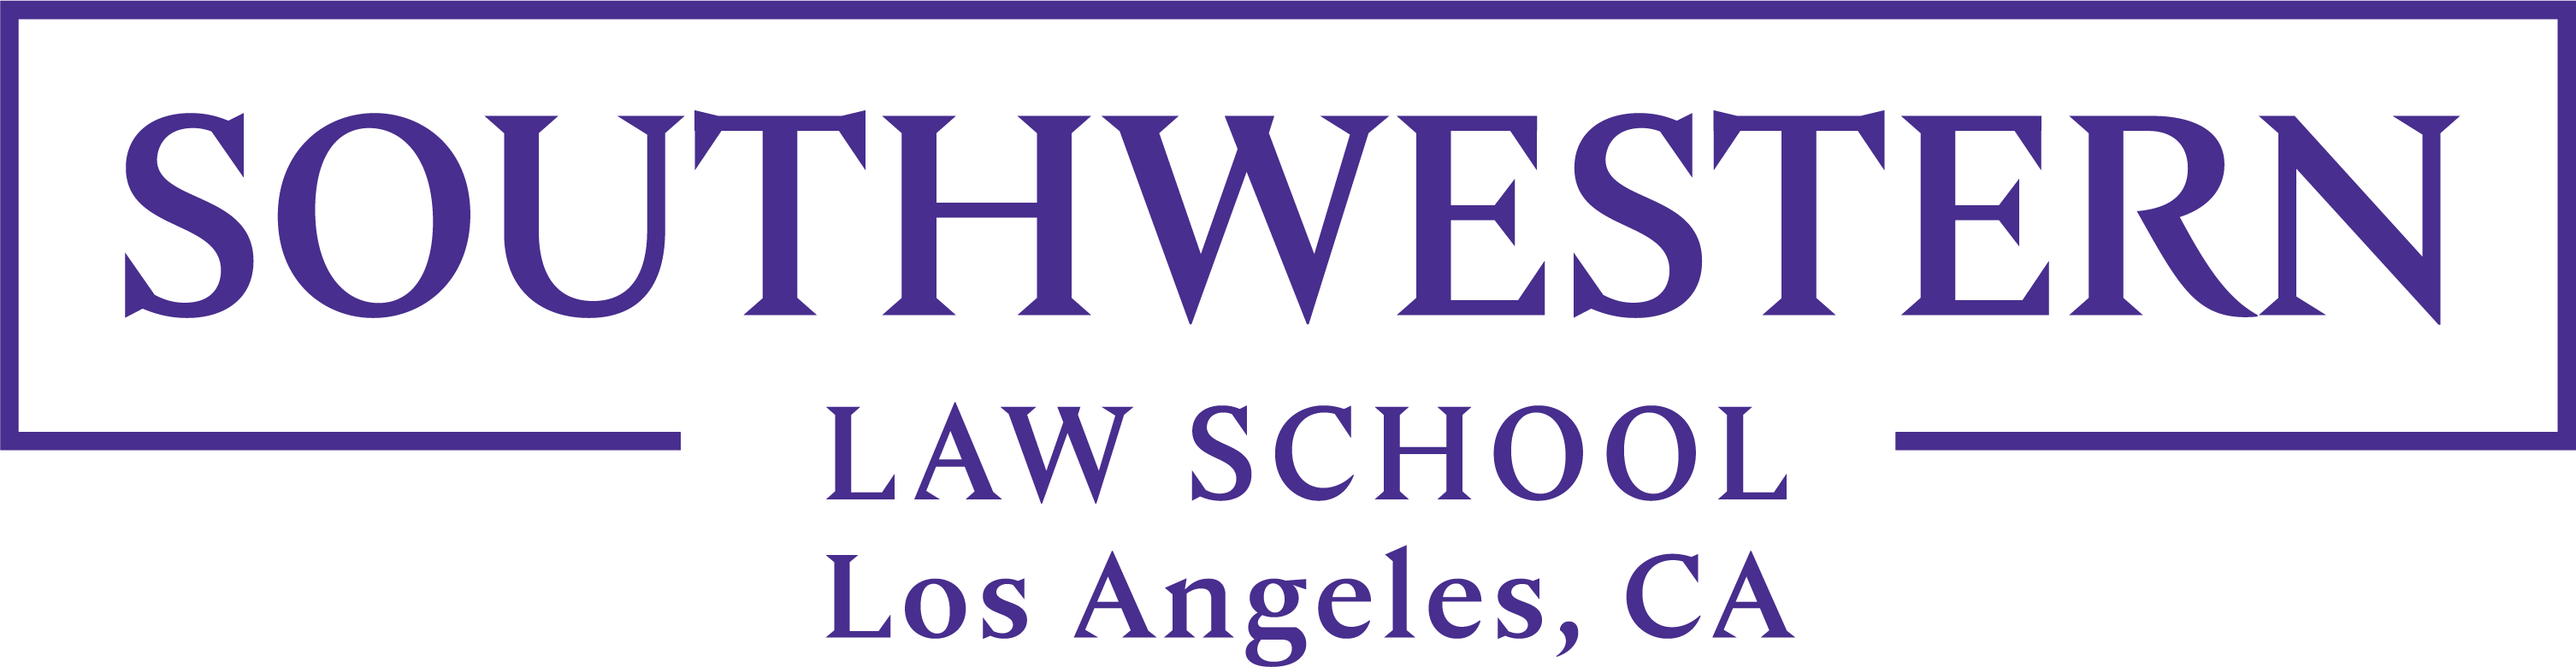 Southwestern_Law_School